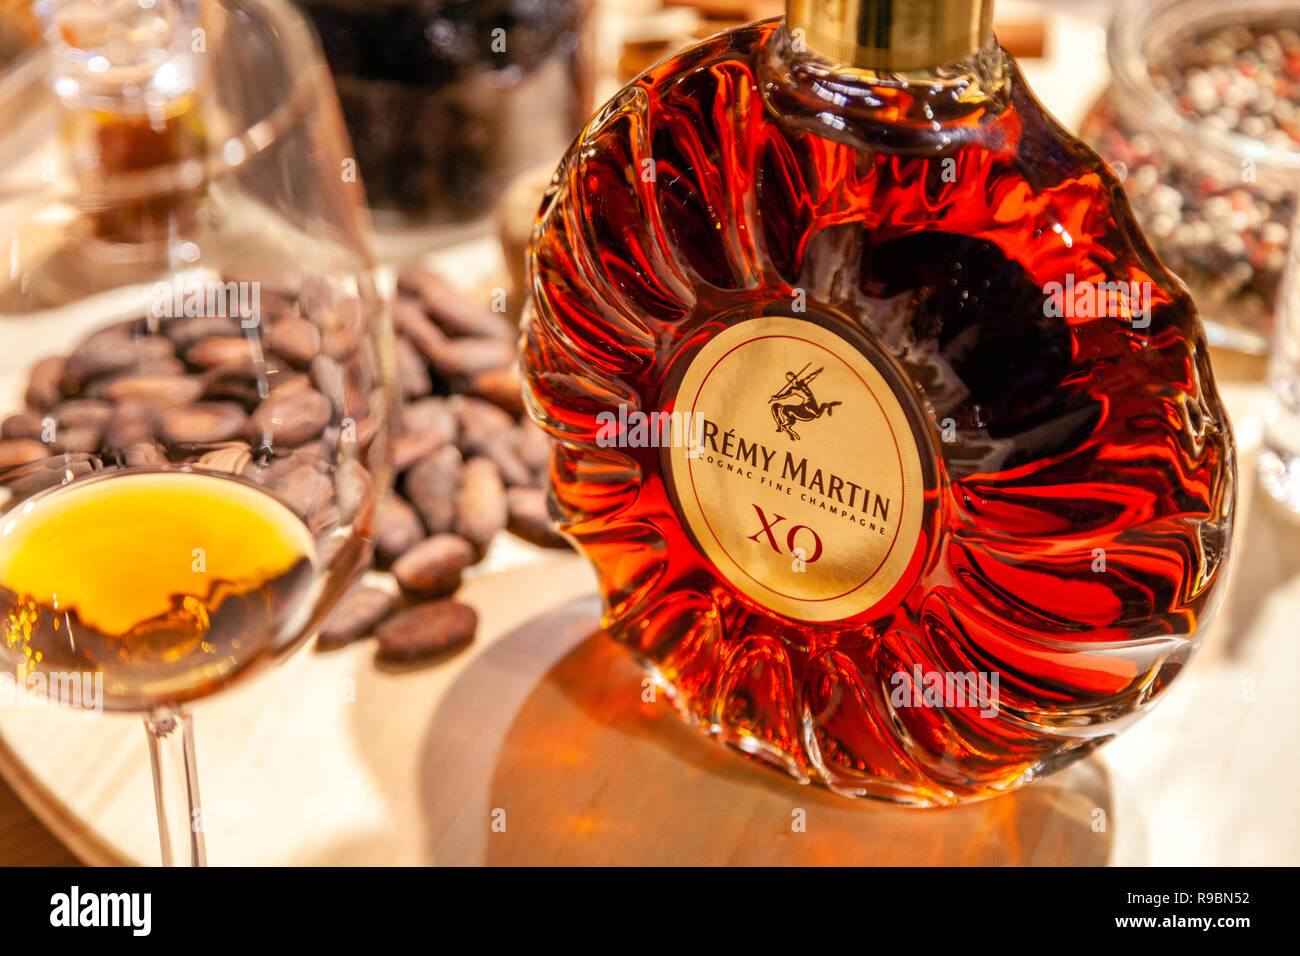 Russland Kemerovo 16-11-2018 Buffet Degustation mit Muttern und Snacks, closeup Luxus Cognac im Crystal Flasche Remy Martin XO und Glas zu öffnen Stockfoto